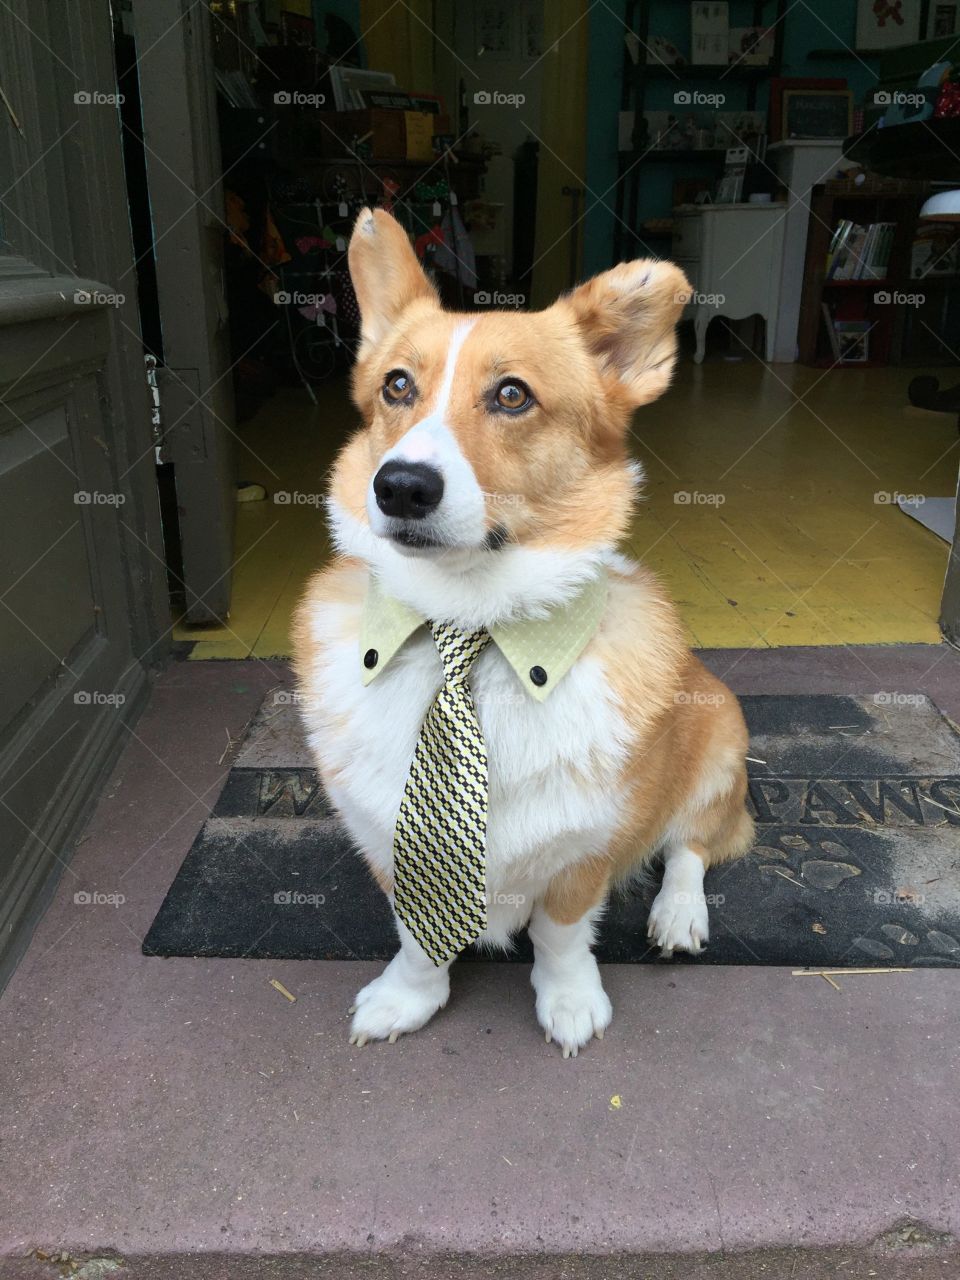 Dog in necktie sitting outdoors